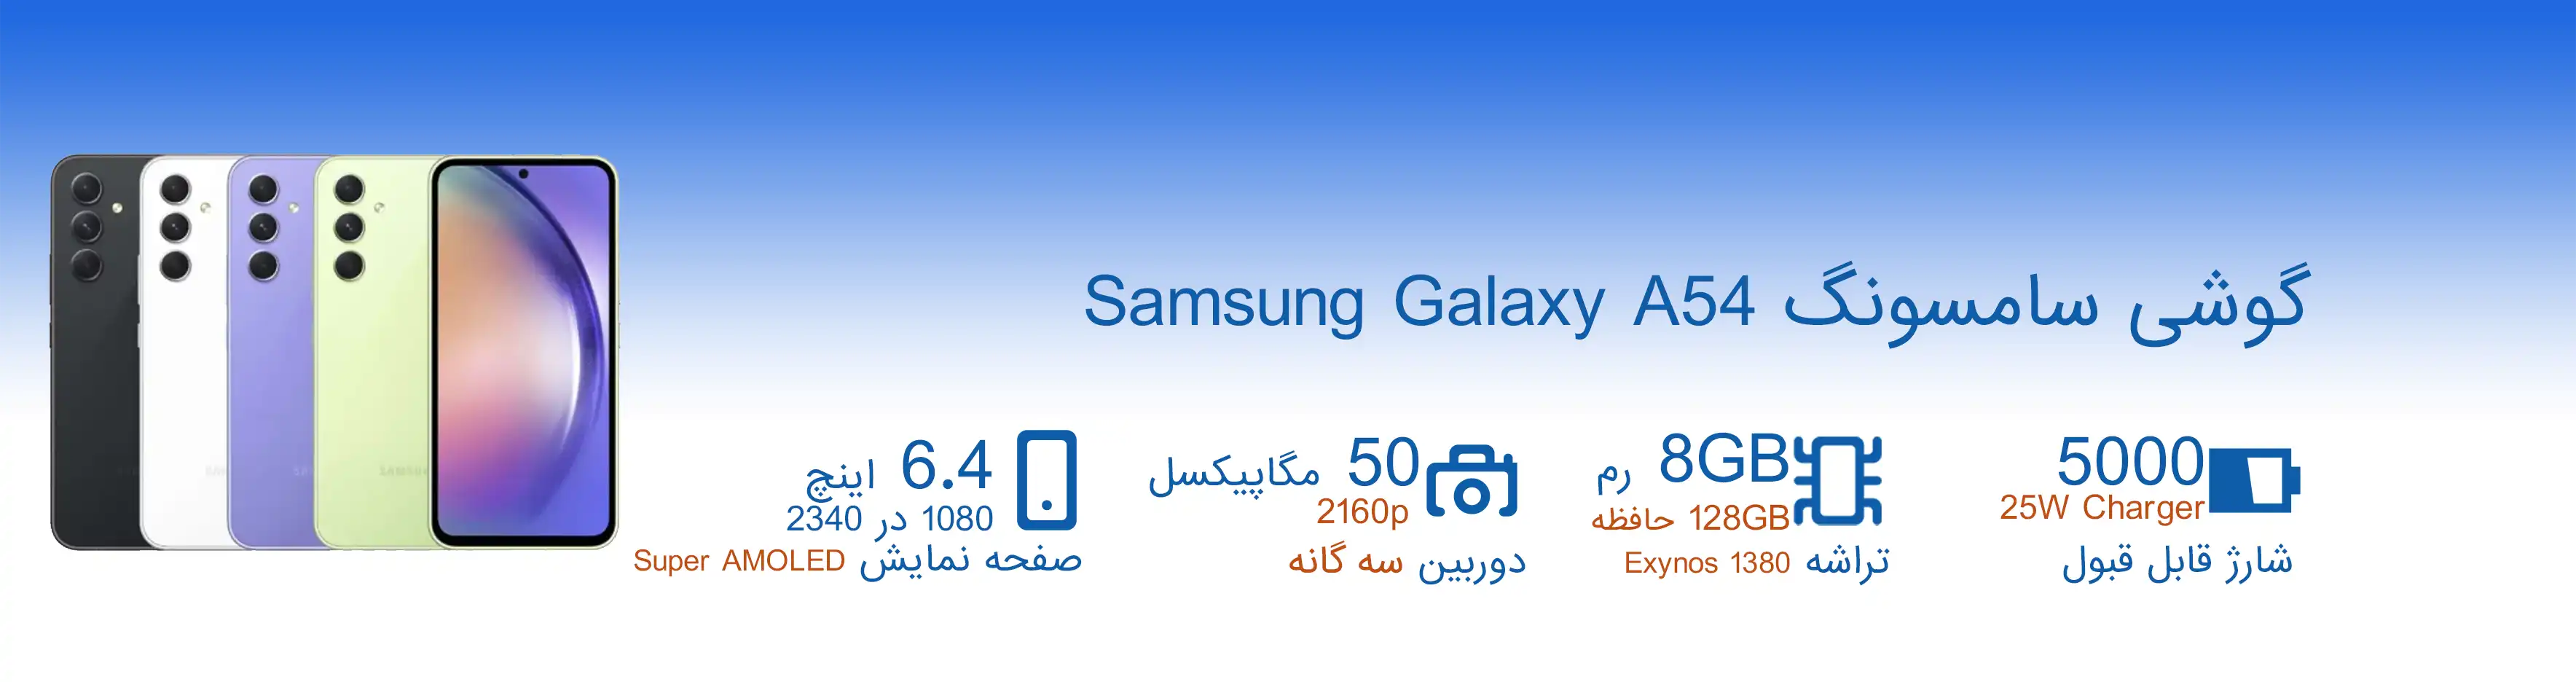 Samsung Galaxy A54 8GB 128GB